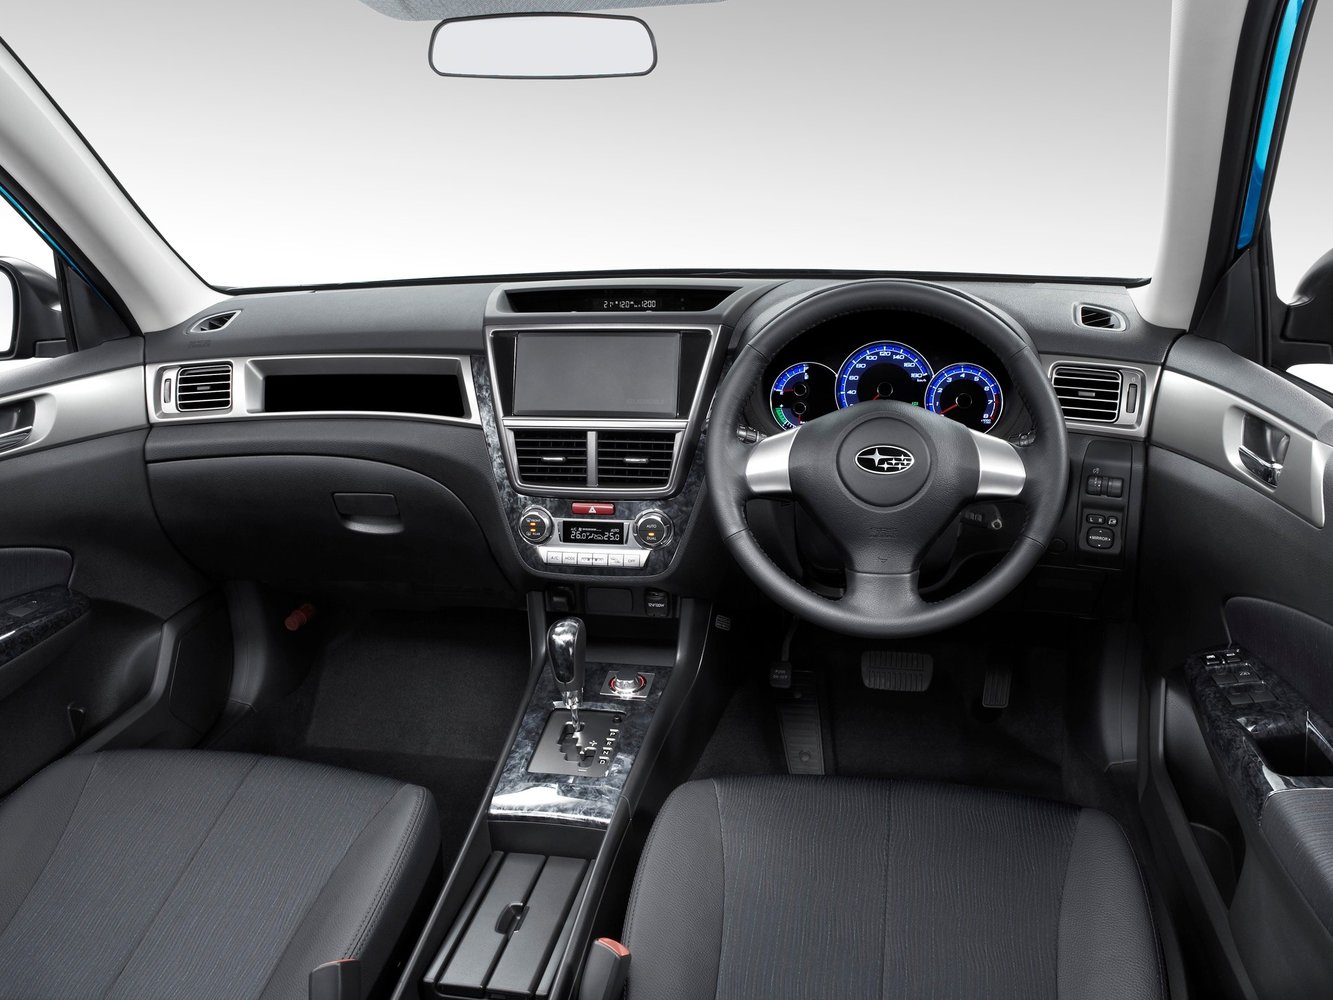 универсал Subaru Exiga 2008 - 2016г выпуска модификация 2.0 AT (148 л.с.)